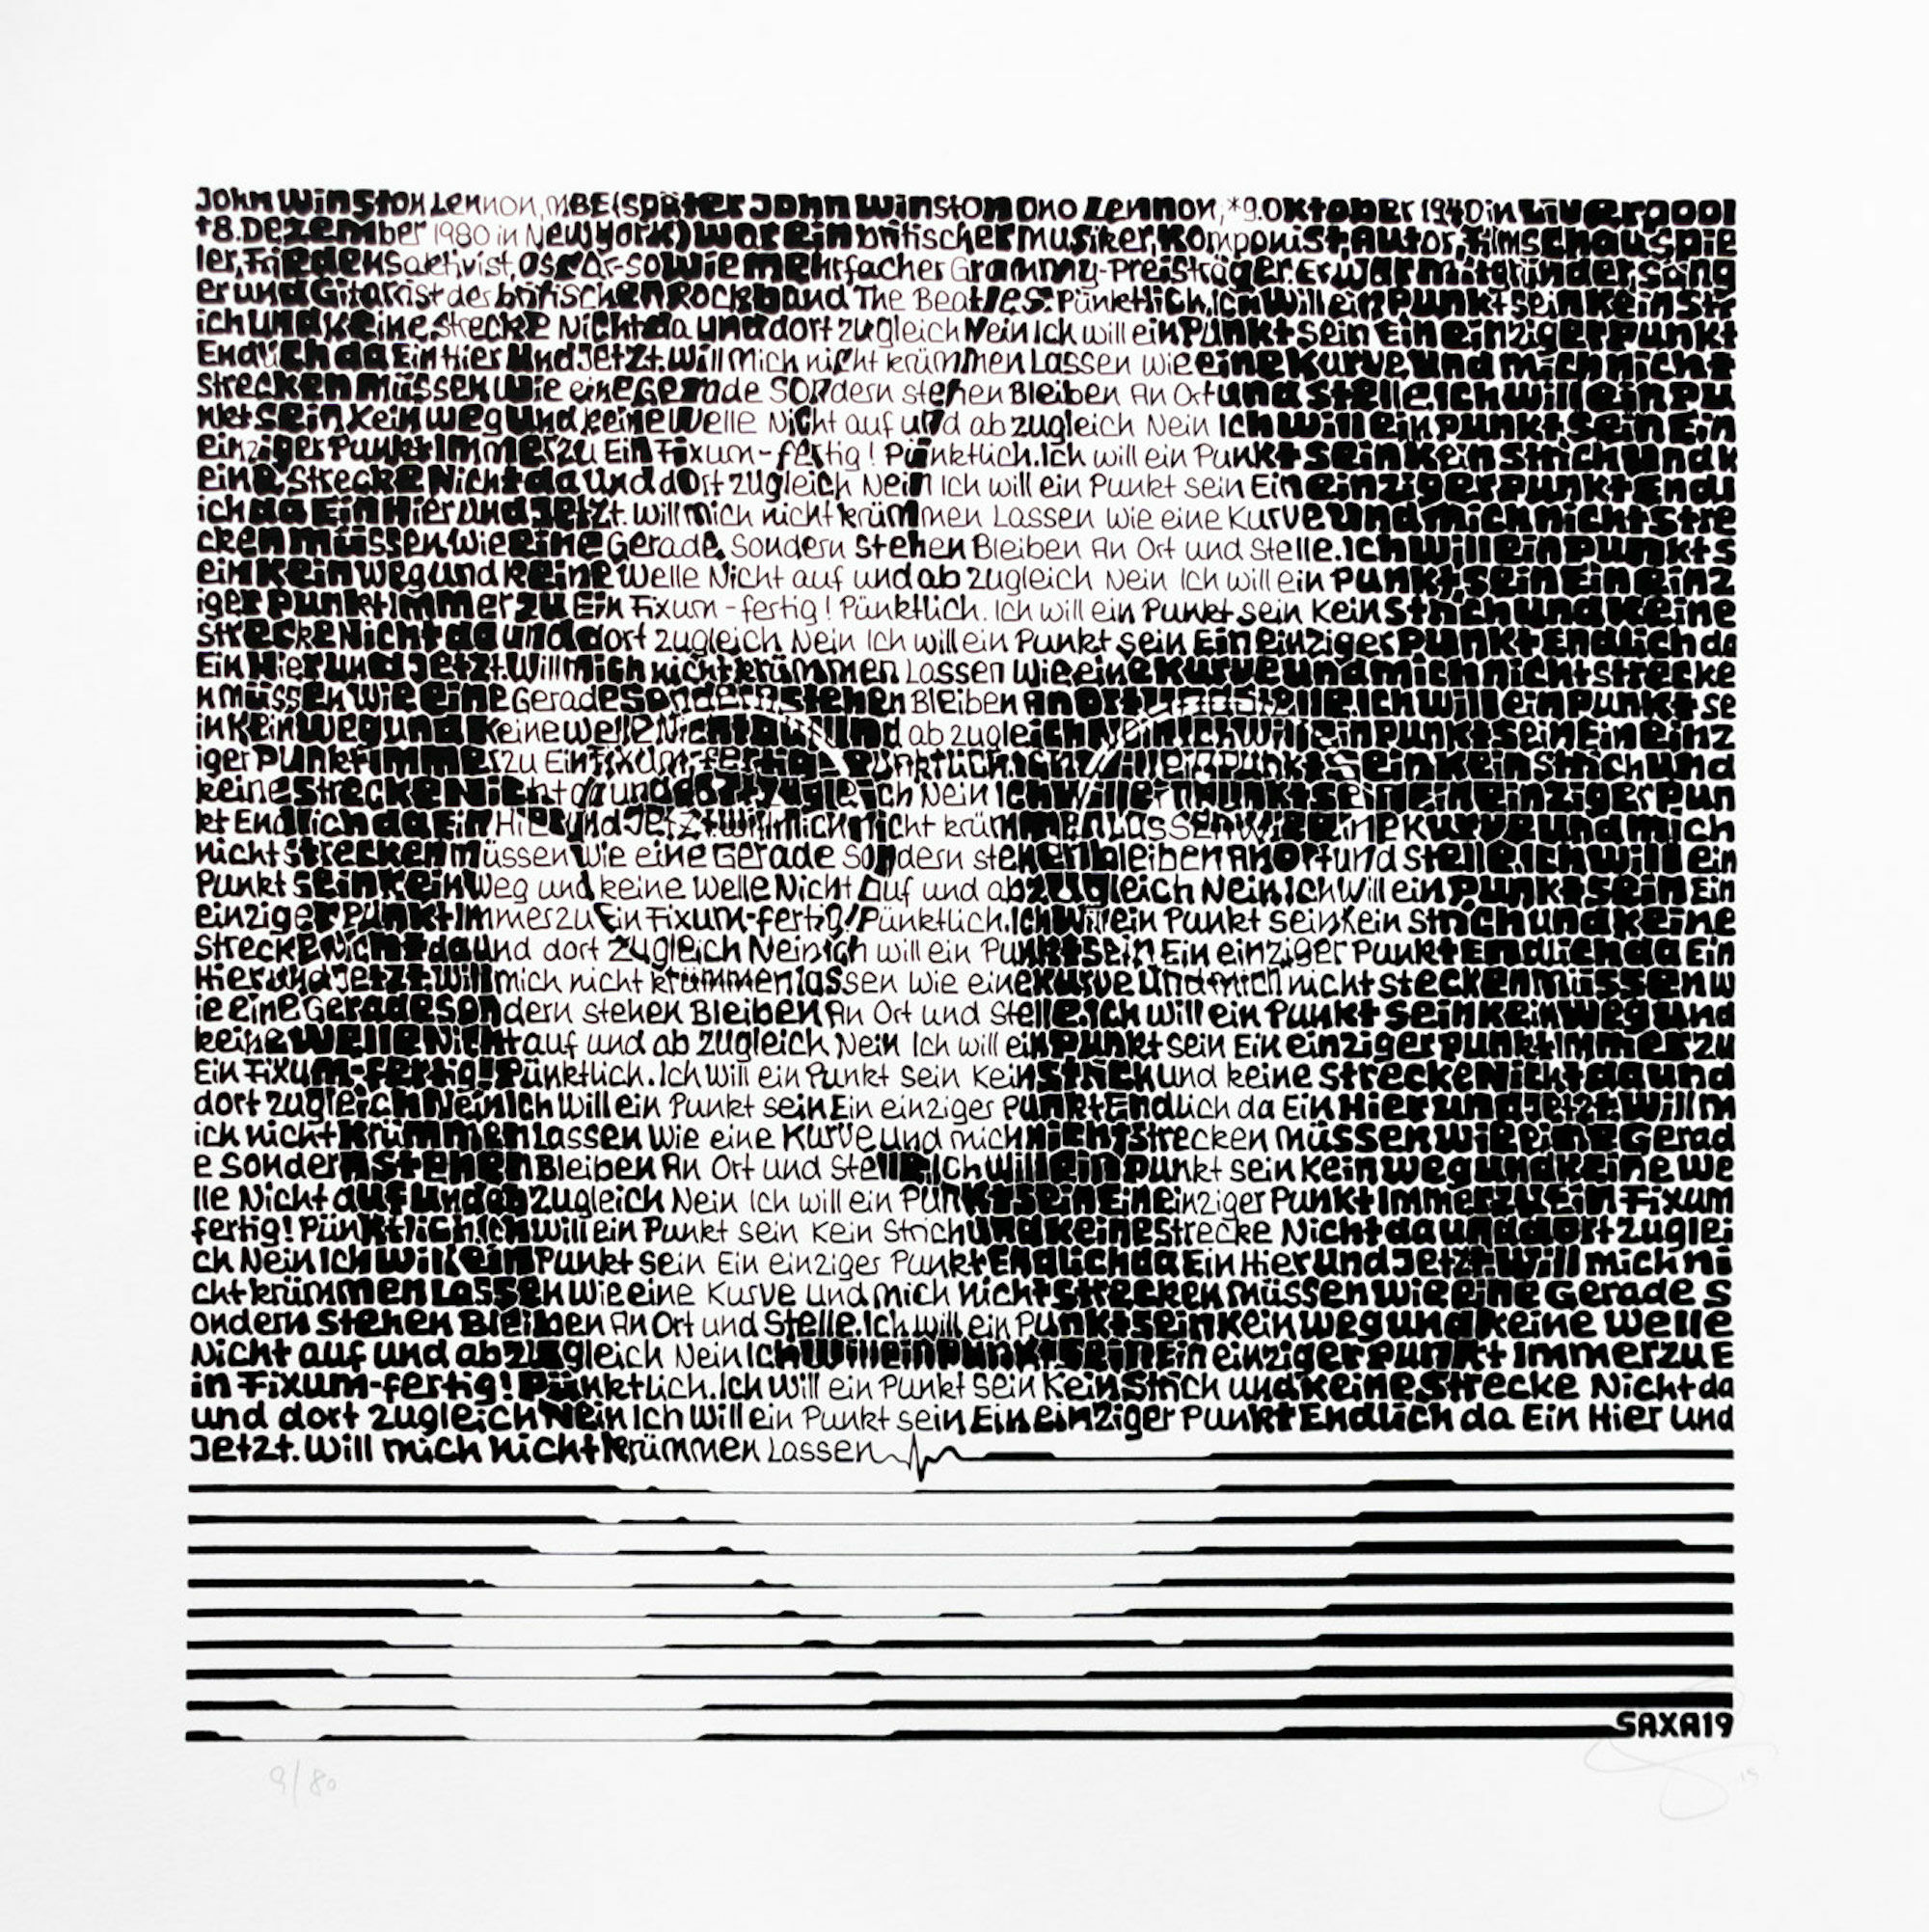 Bild "John Lennon" (2019) von SAXA